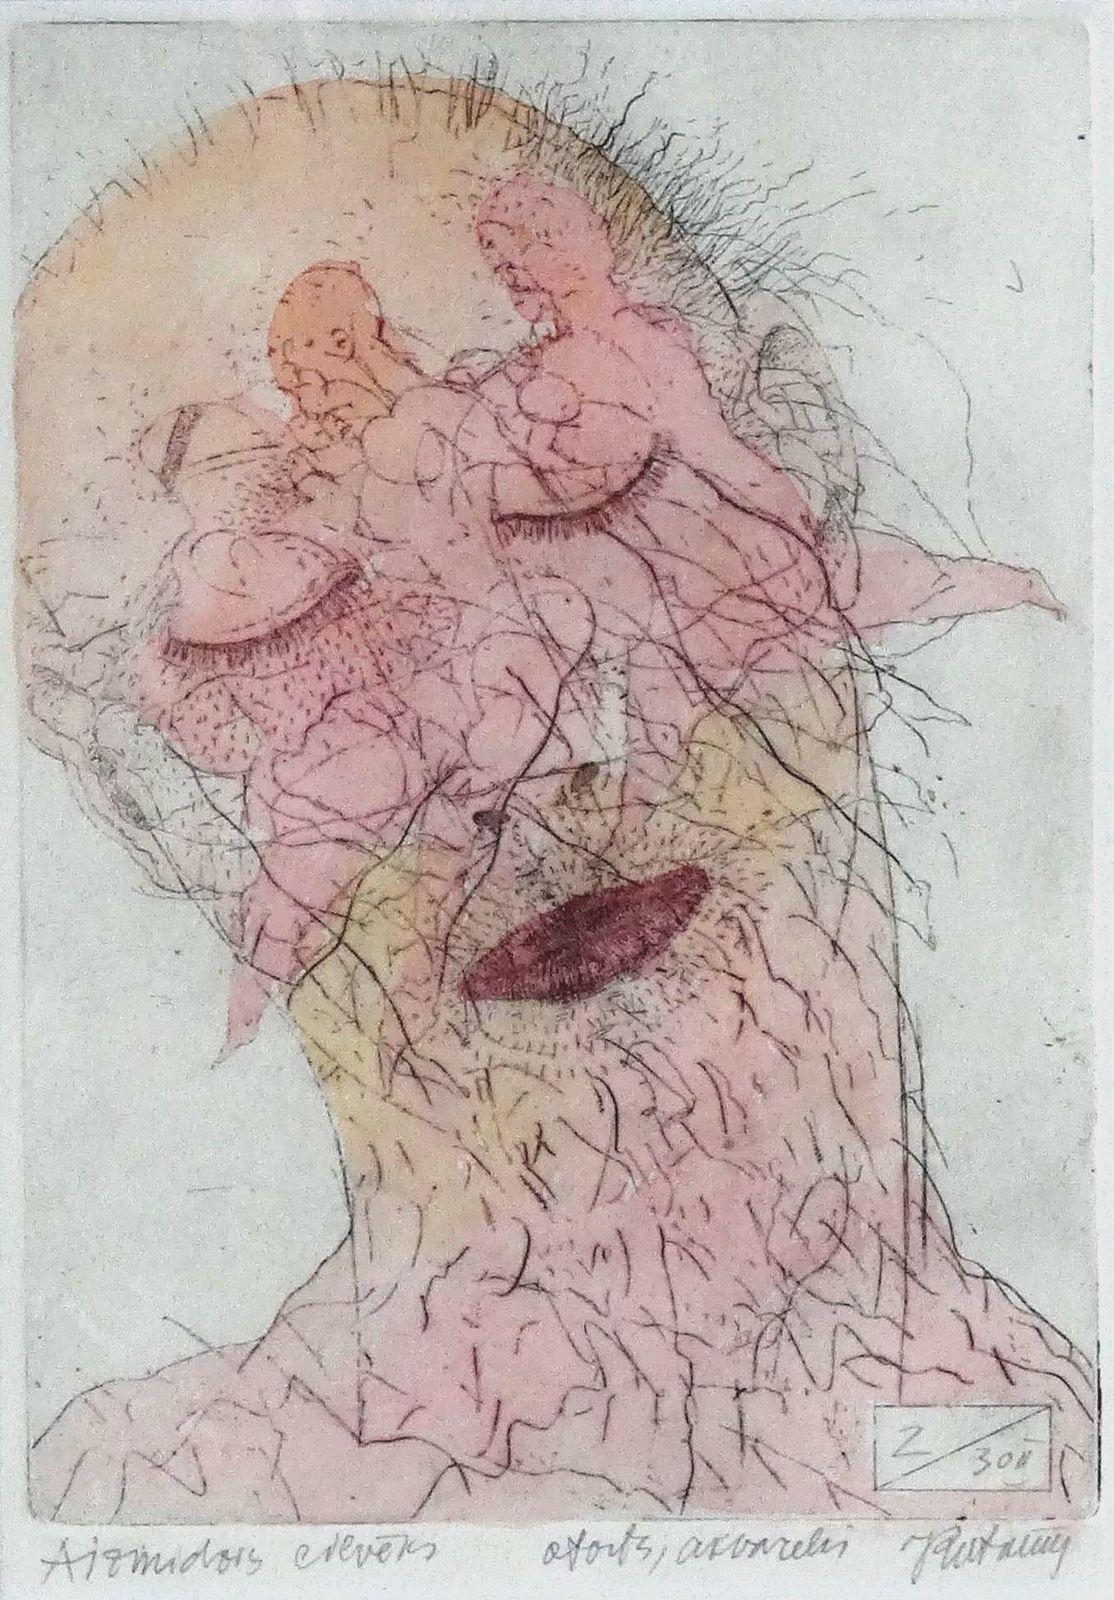 Portrait Print Juris Putrams - L'homme endormi. 2000. Papier, eau-forte, aquarelle, 19x13 cm